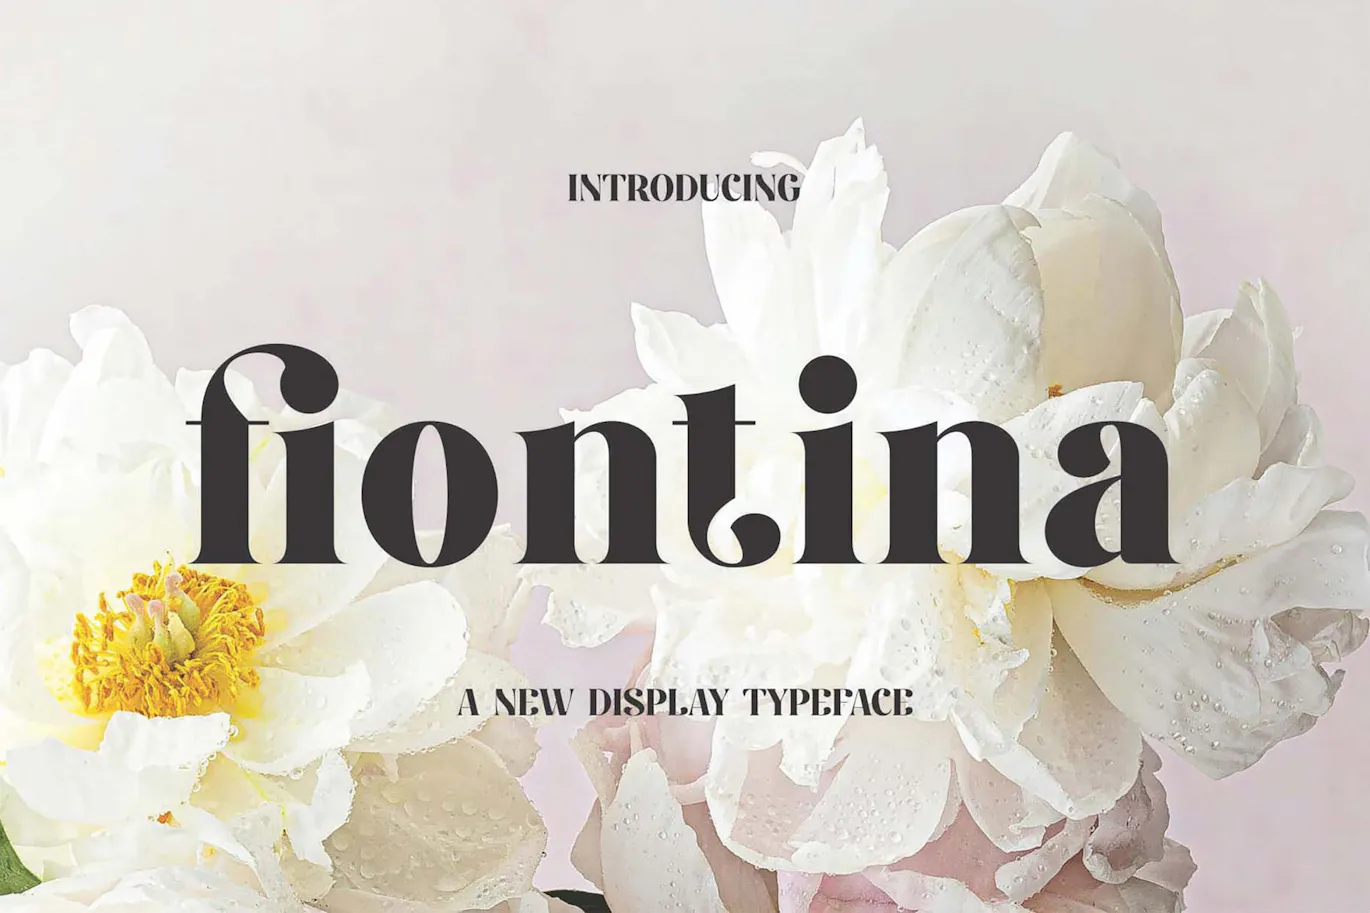 独特且非常优雅的英文字体 - Fiontina Display Typeface Font 设计字体 第1张